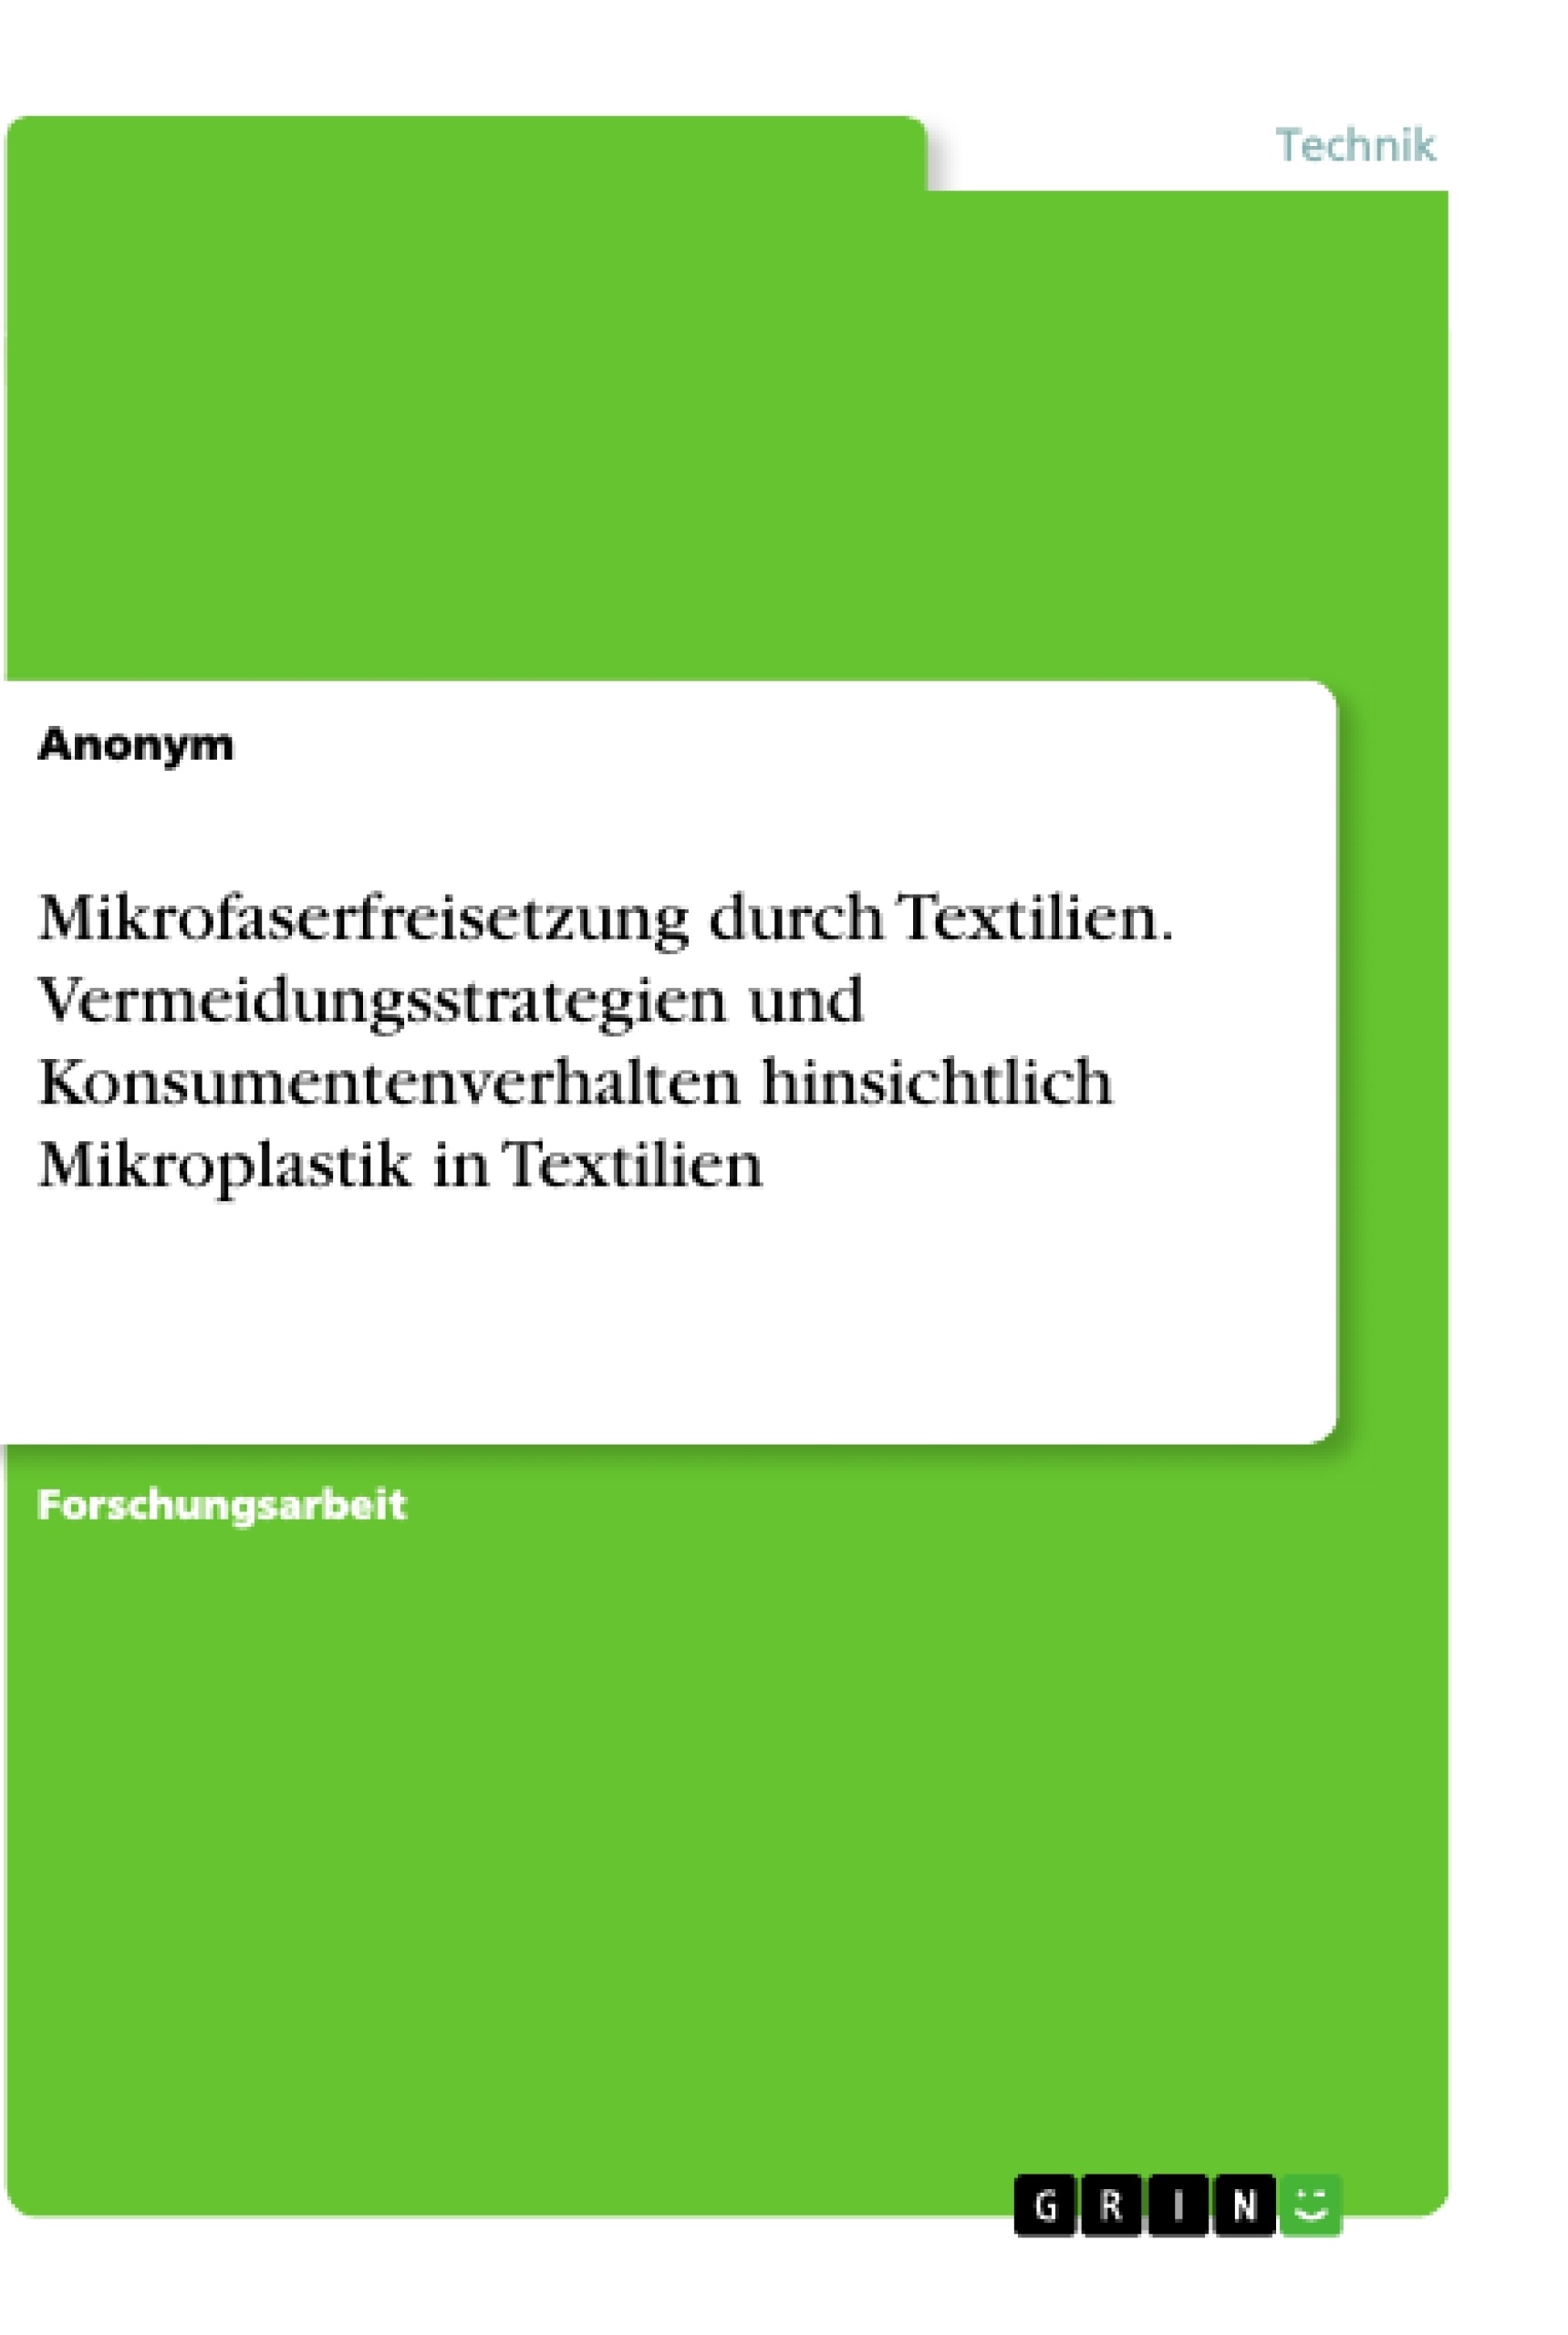 Title: Mikrofaserfreisetzung durch Textilien. Vermeidungsstrategien und Konsumentenverhalten hinsichtlich Mikroplastik in Textilien